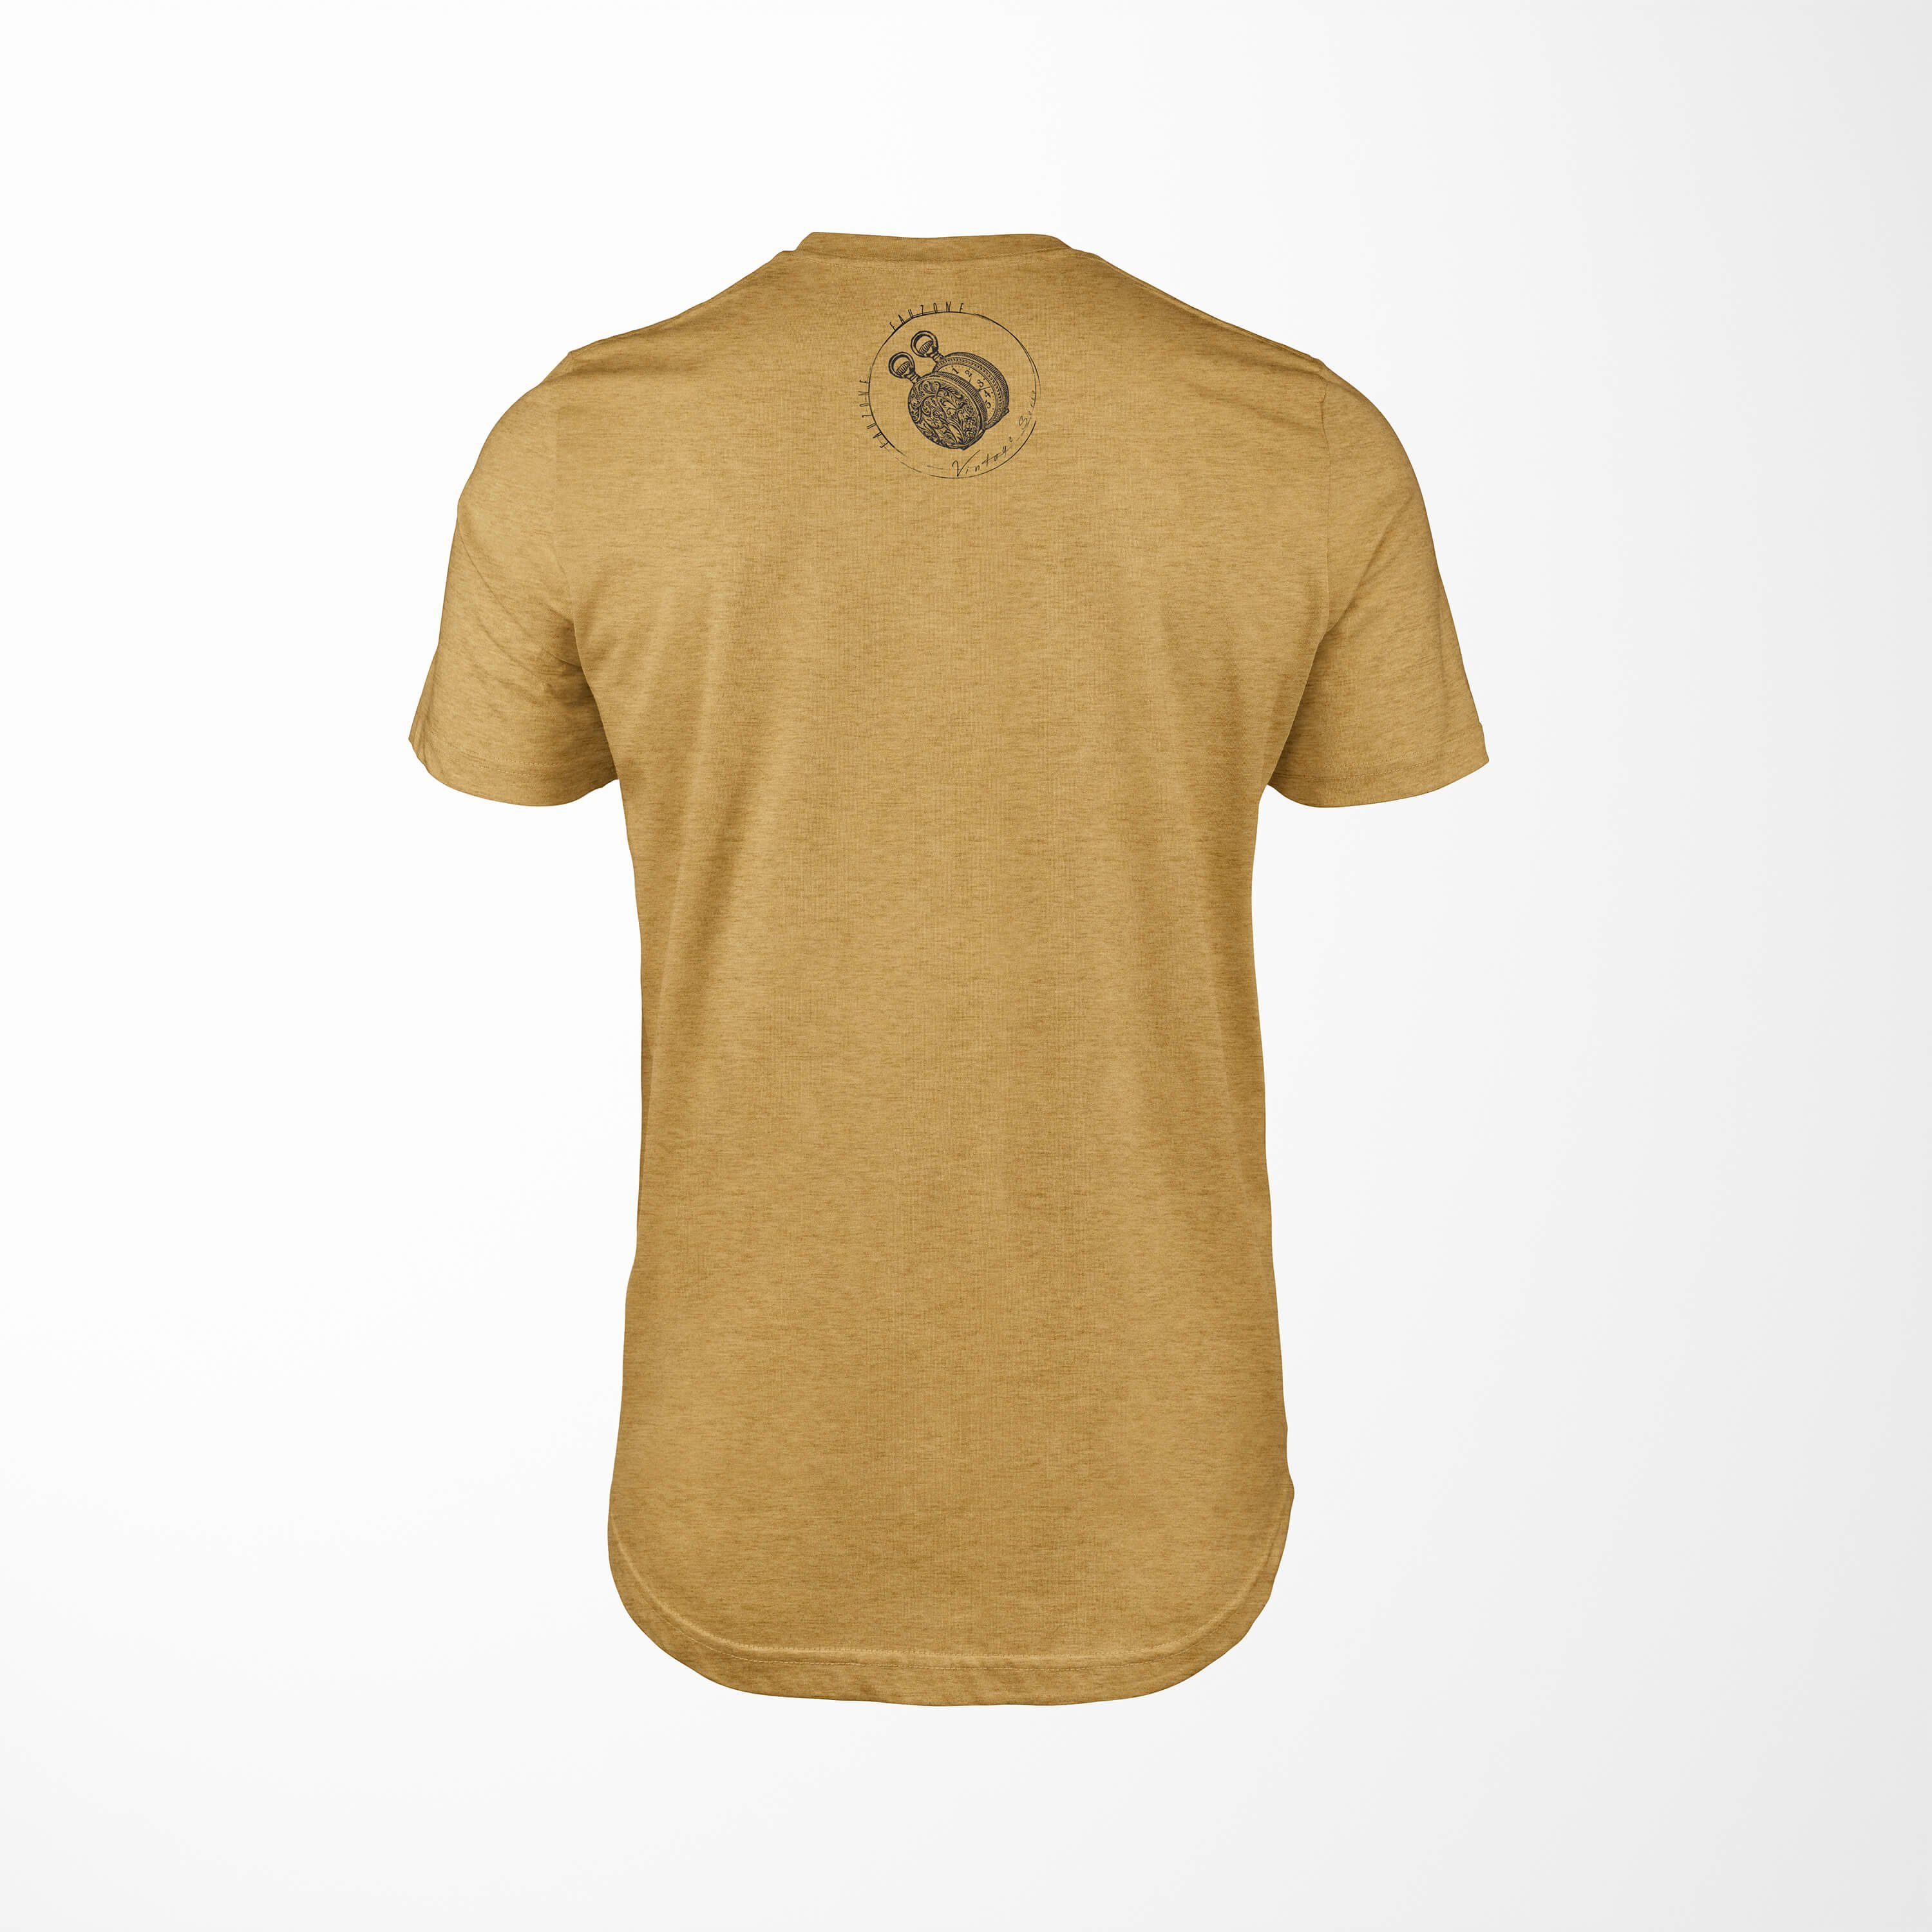 Sinus Art T-Shirt Vintage Herren Antique T-Shirt Taschenuhr Gold